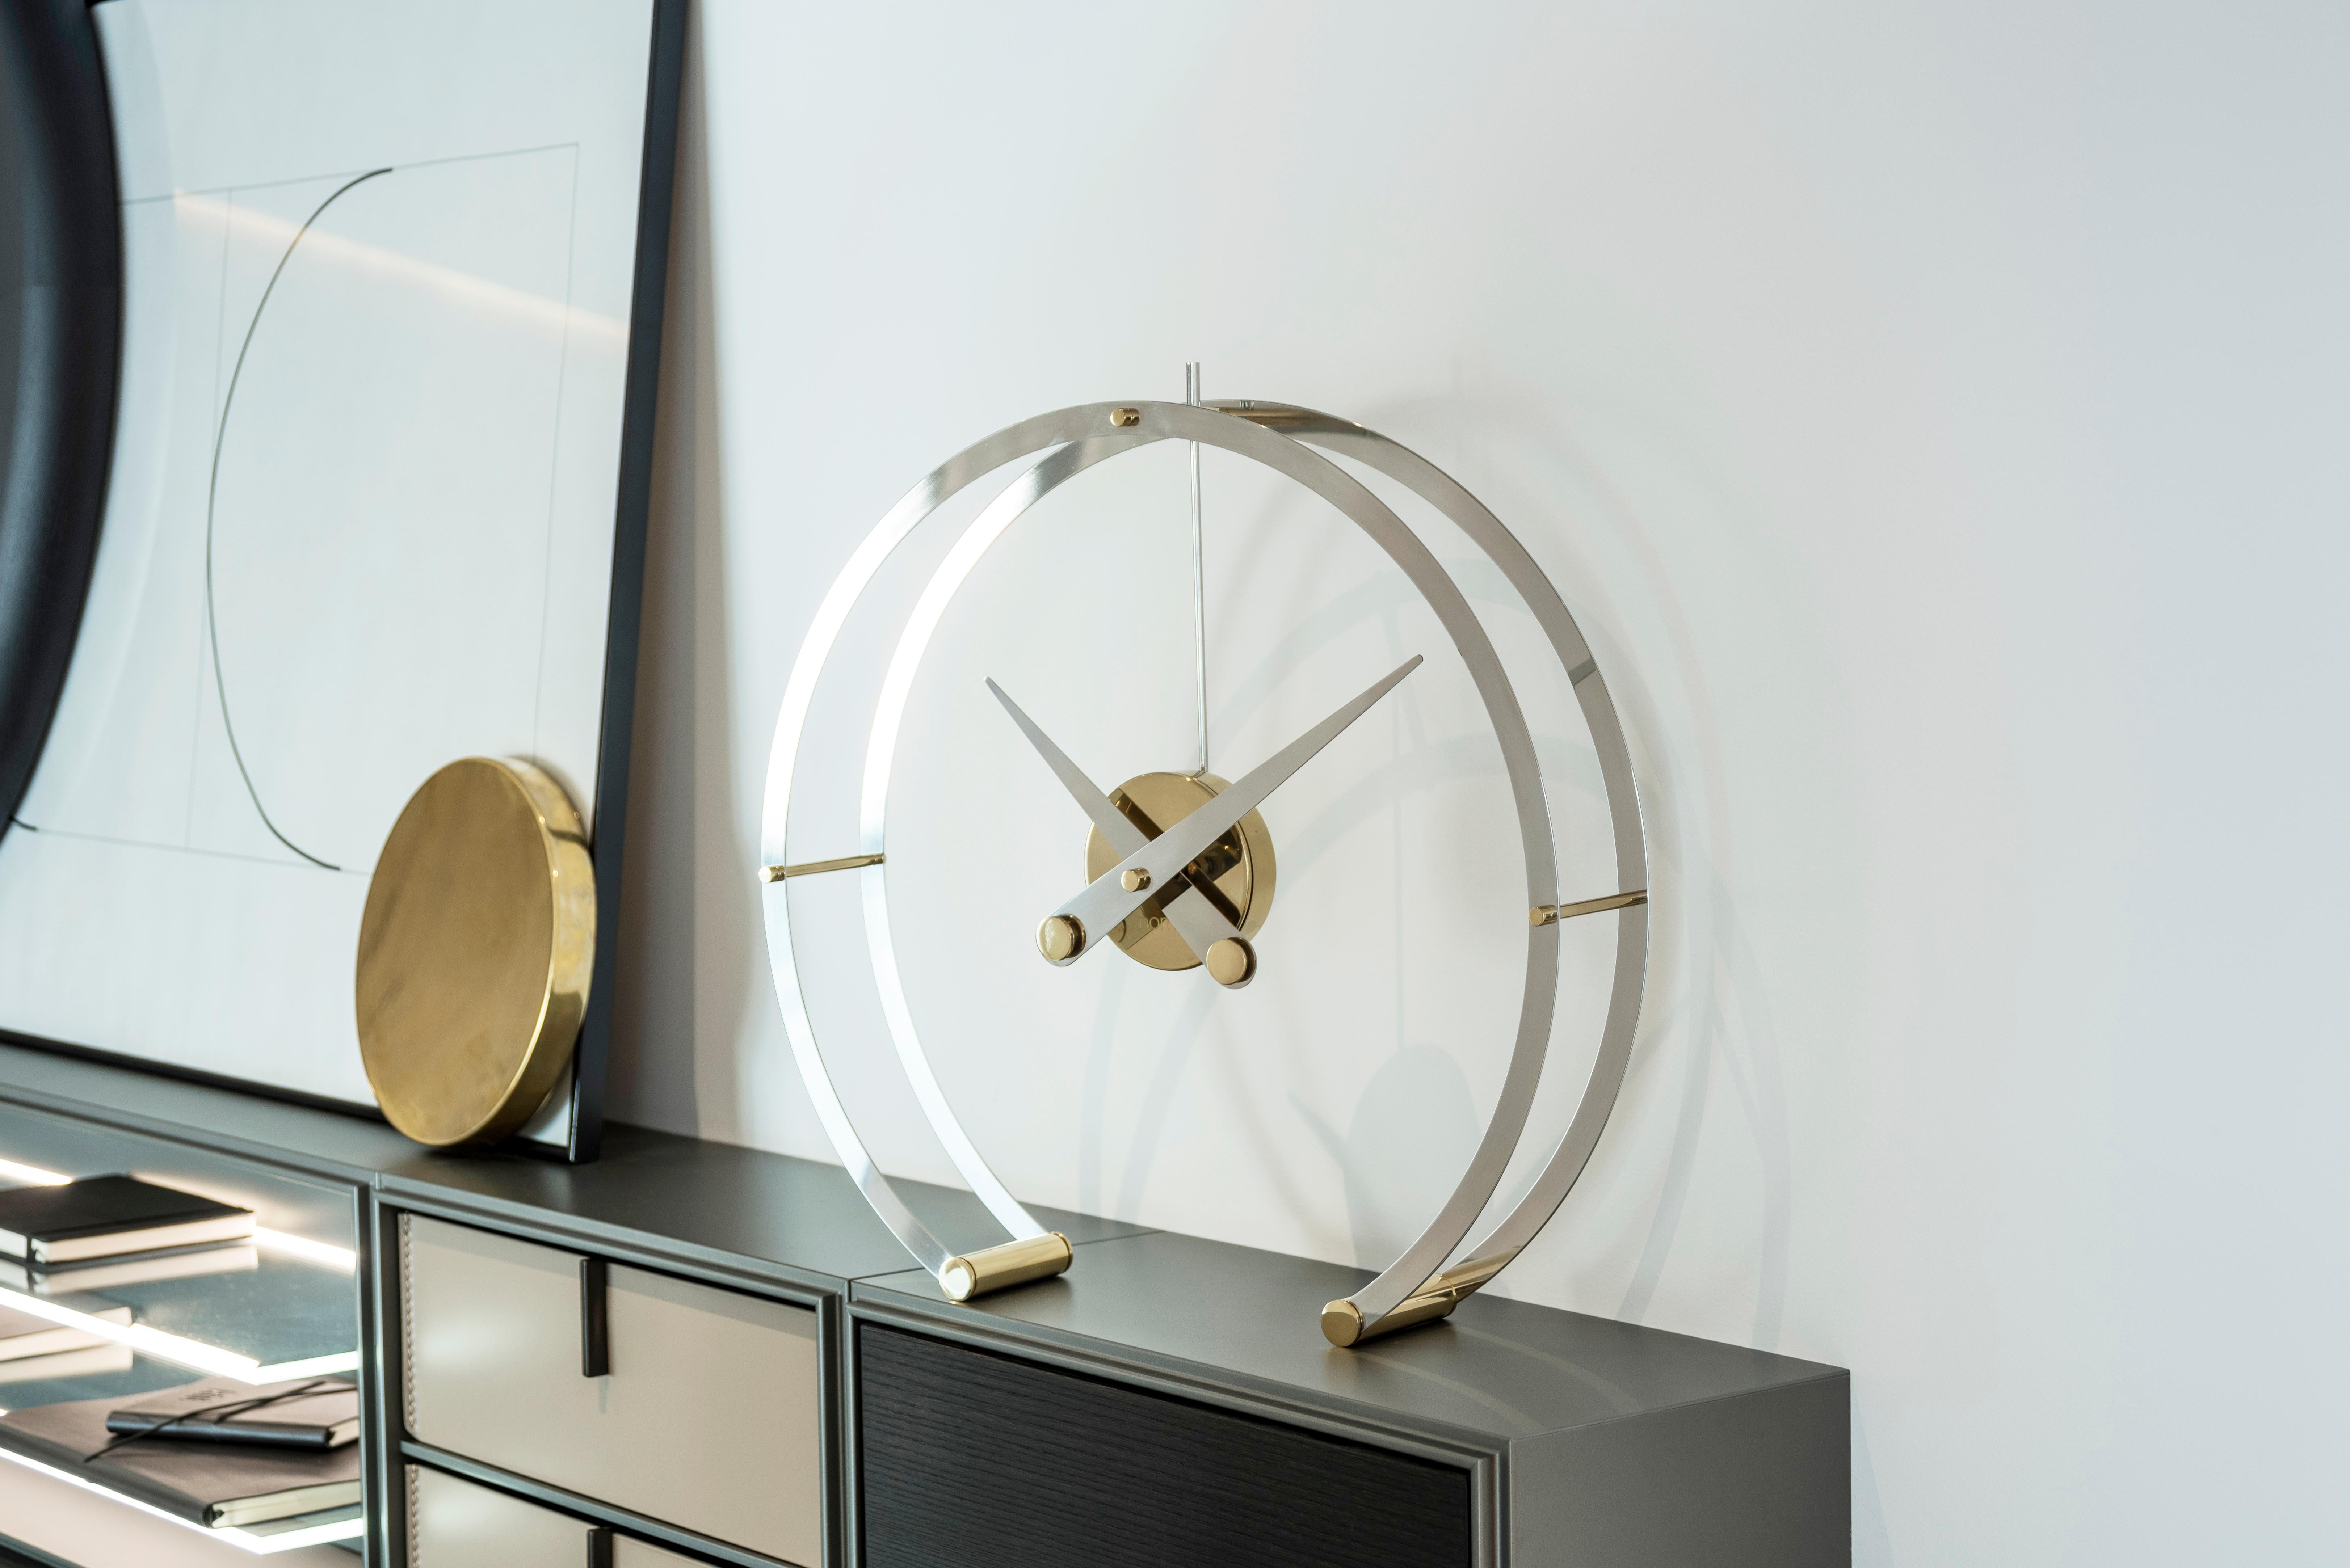 Nomon erfindet seine Strukturen neu und bringt Ihnen eine Uhr aus der Desktop-Kollektion mit einem innovativen und eleganten Design.

Die Omega I Clock beeindruckt dadurch, dass sie eine Uhr in der Luft schweben lässt und gleichzeitig ihre Tiefe